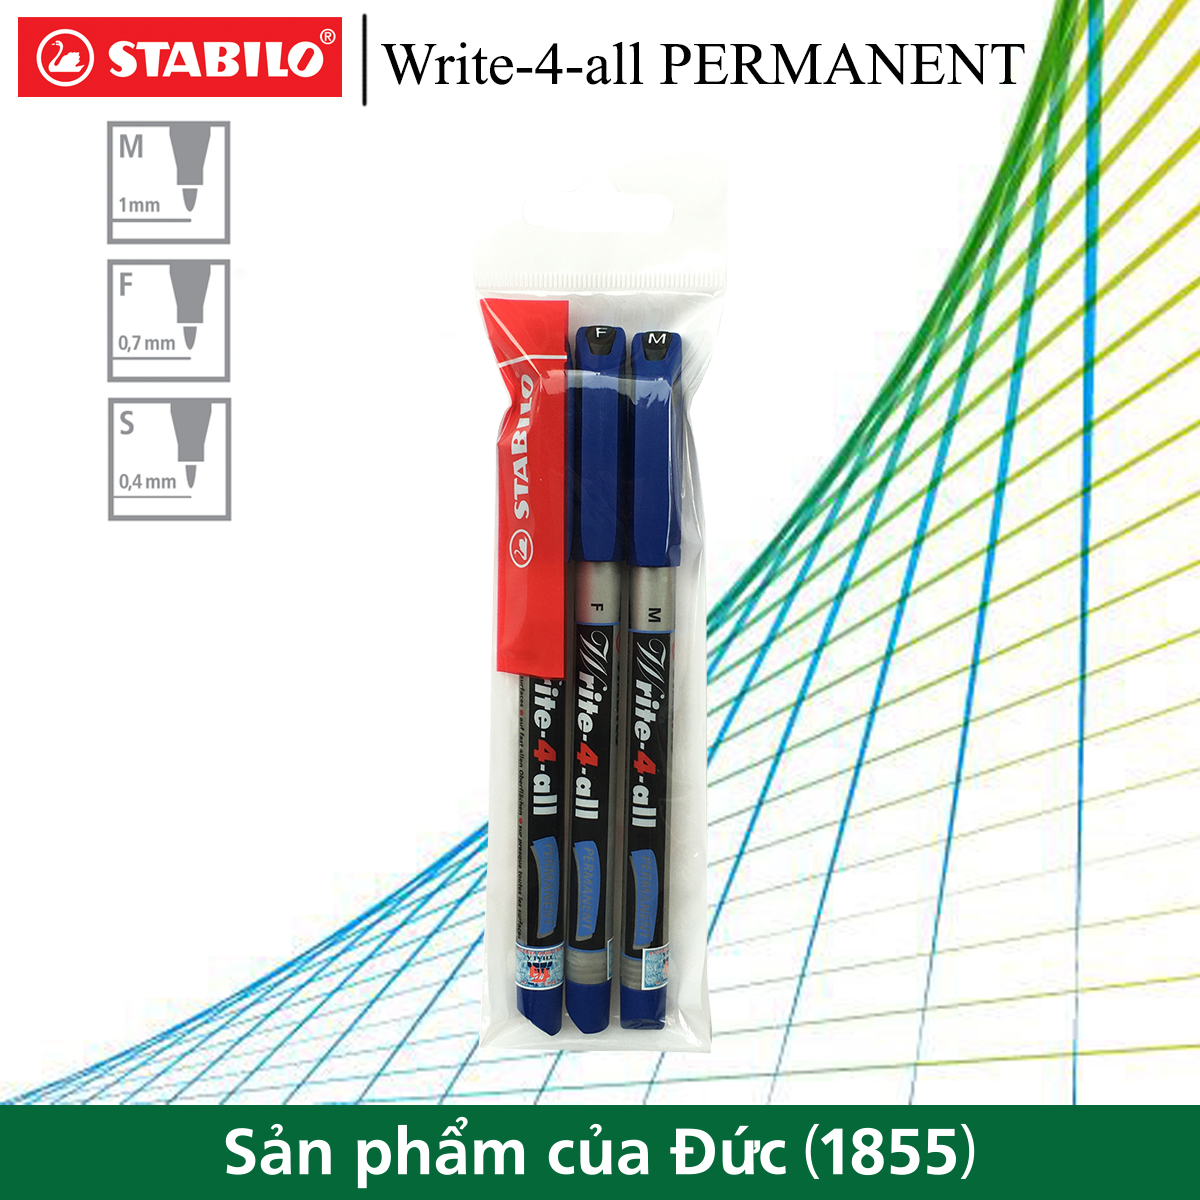 Bộ 3 bút kỹ thuật STABILO Write-4-all PERMANENT M/F/S (3 nét/màu)